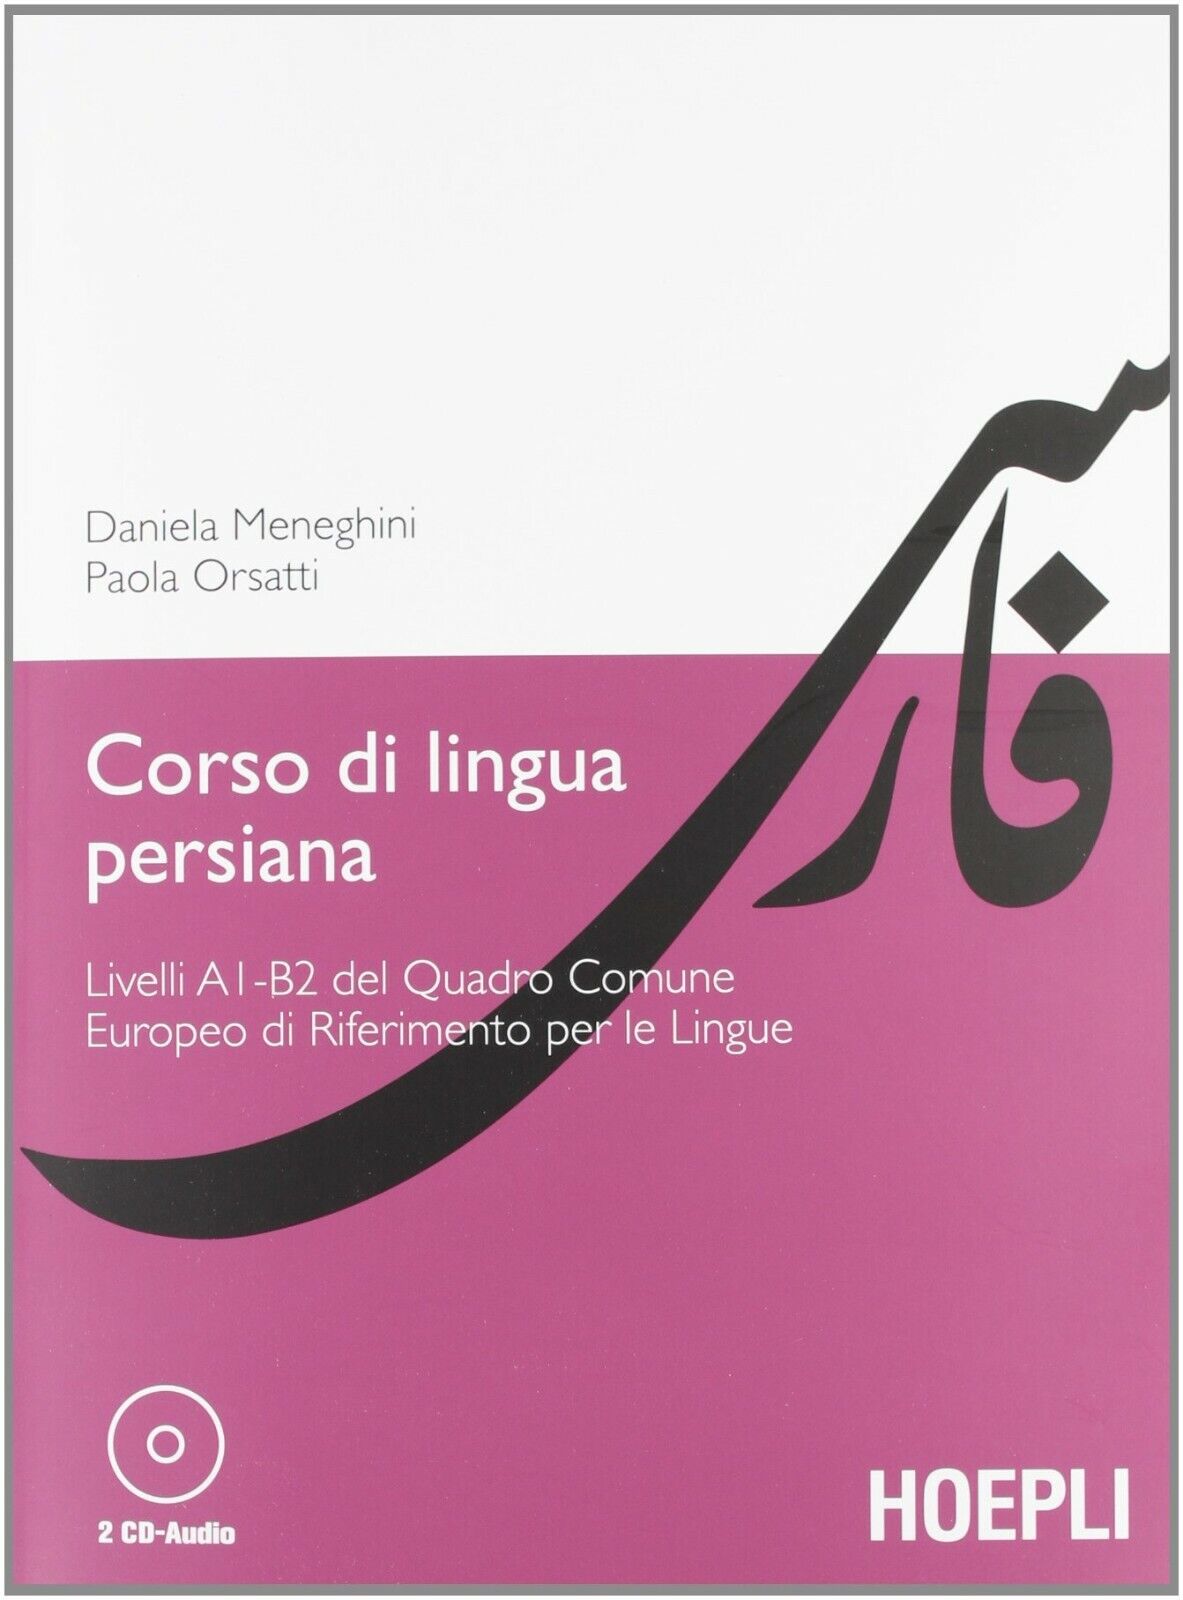  Corso di Lingua Persiana - Daniela Meneghini, Paola Orsatti,  2012,  Hoepli libro usato